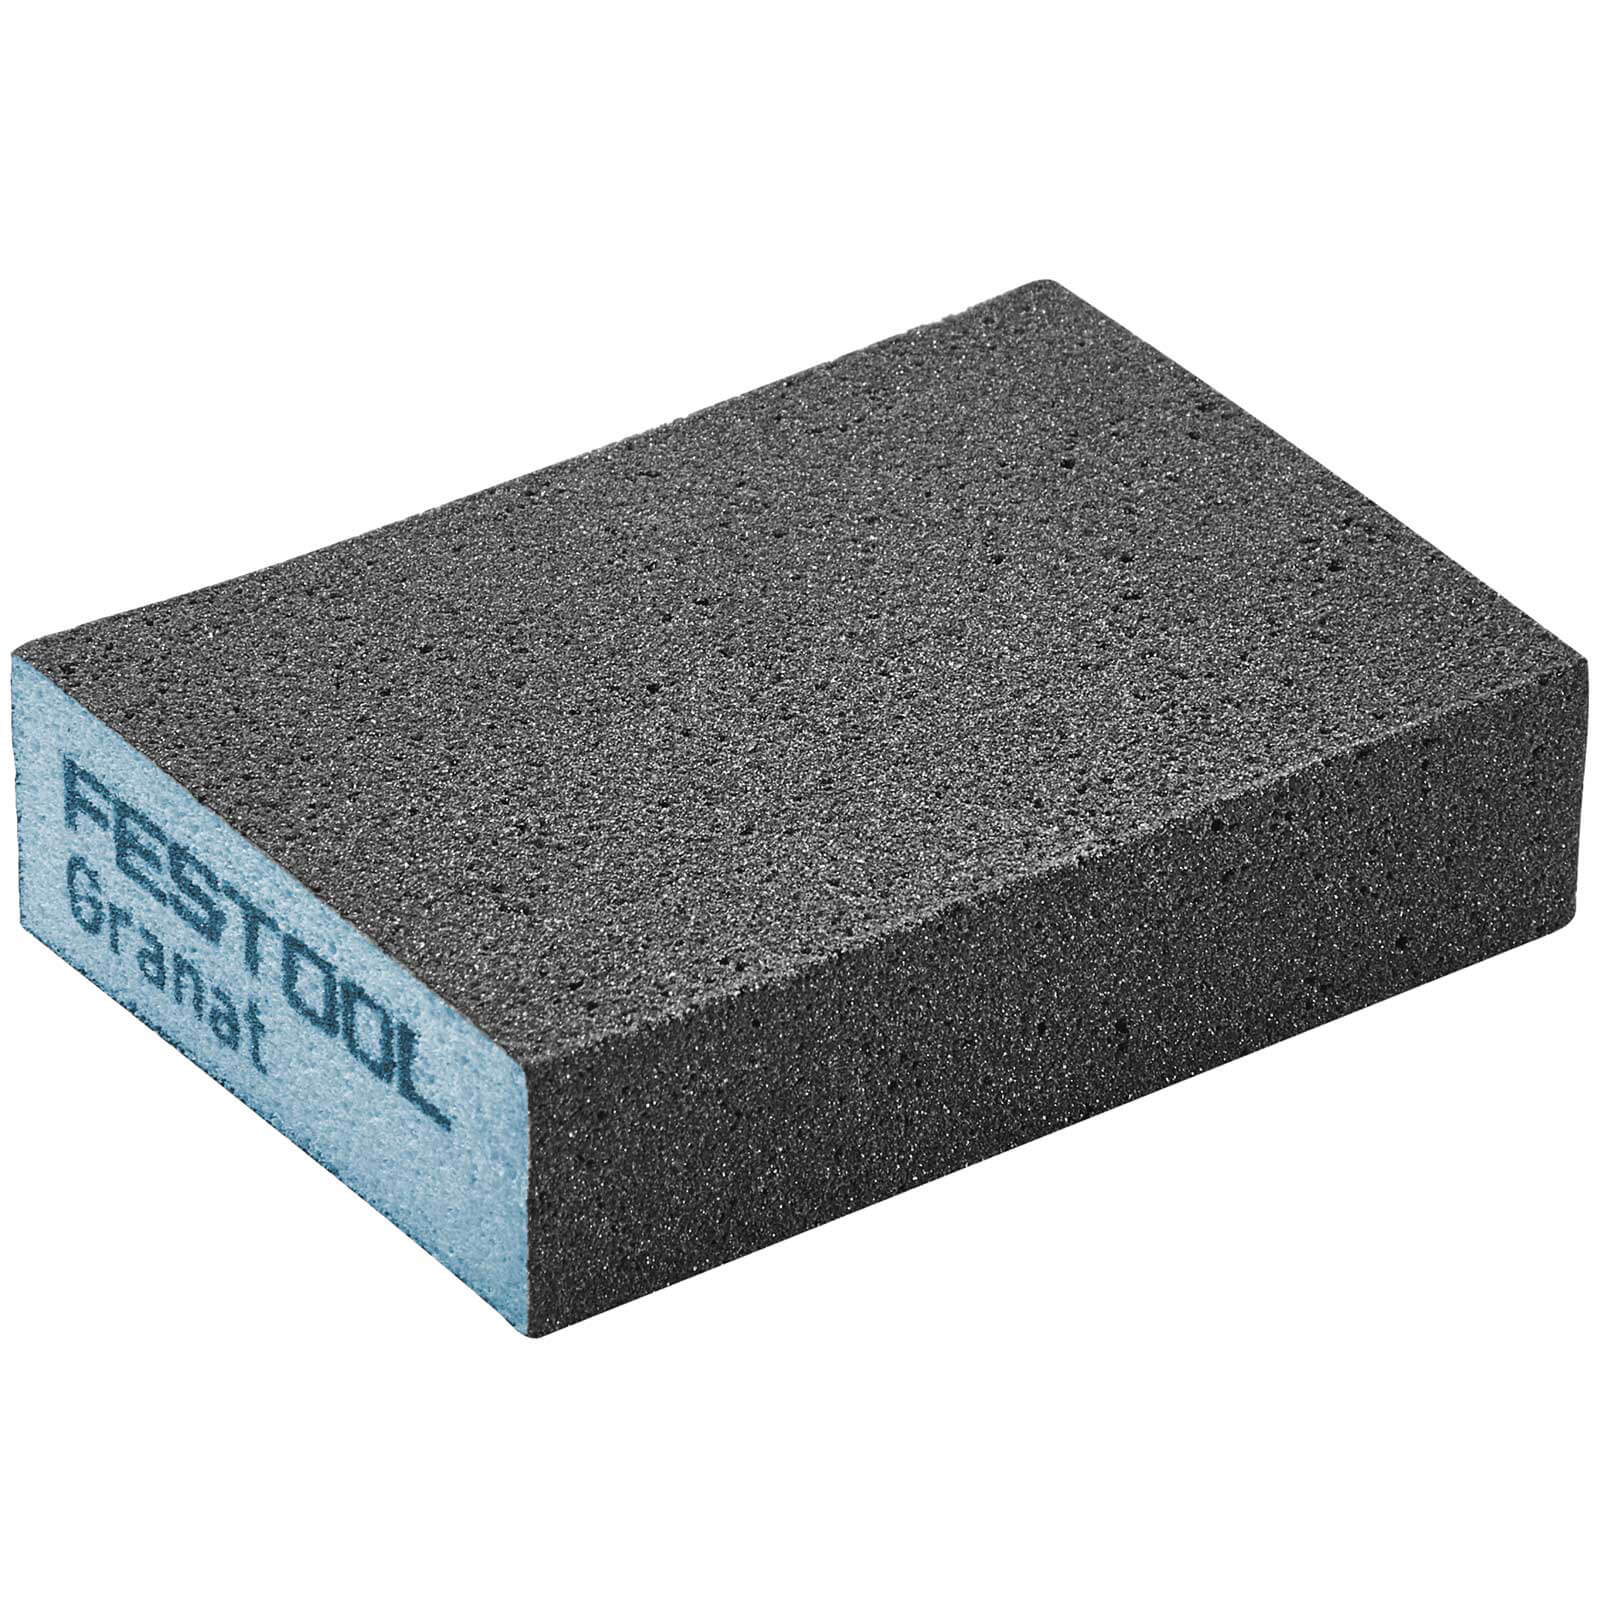 Photo of Festool Abrasive Hand Sanding Sponge Block 120g Pack Of 6